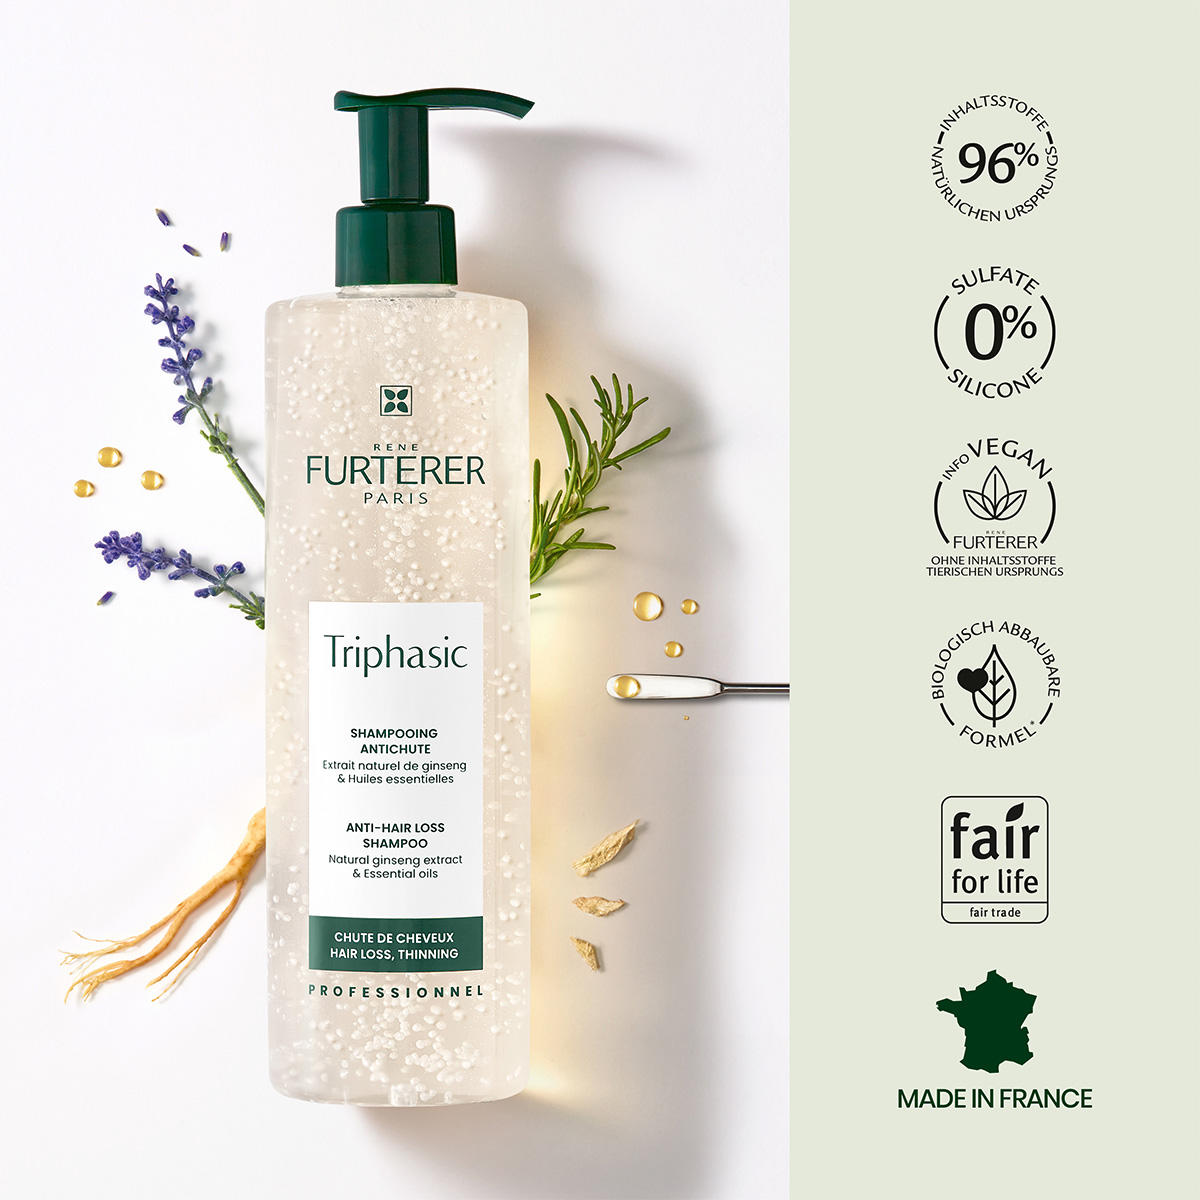 René Furterer Triphasic Shampoo for hair loss 600 ml - 9